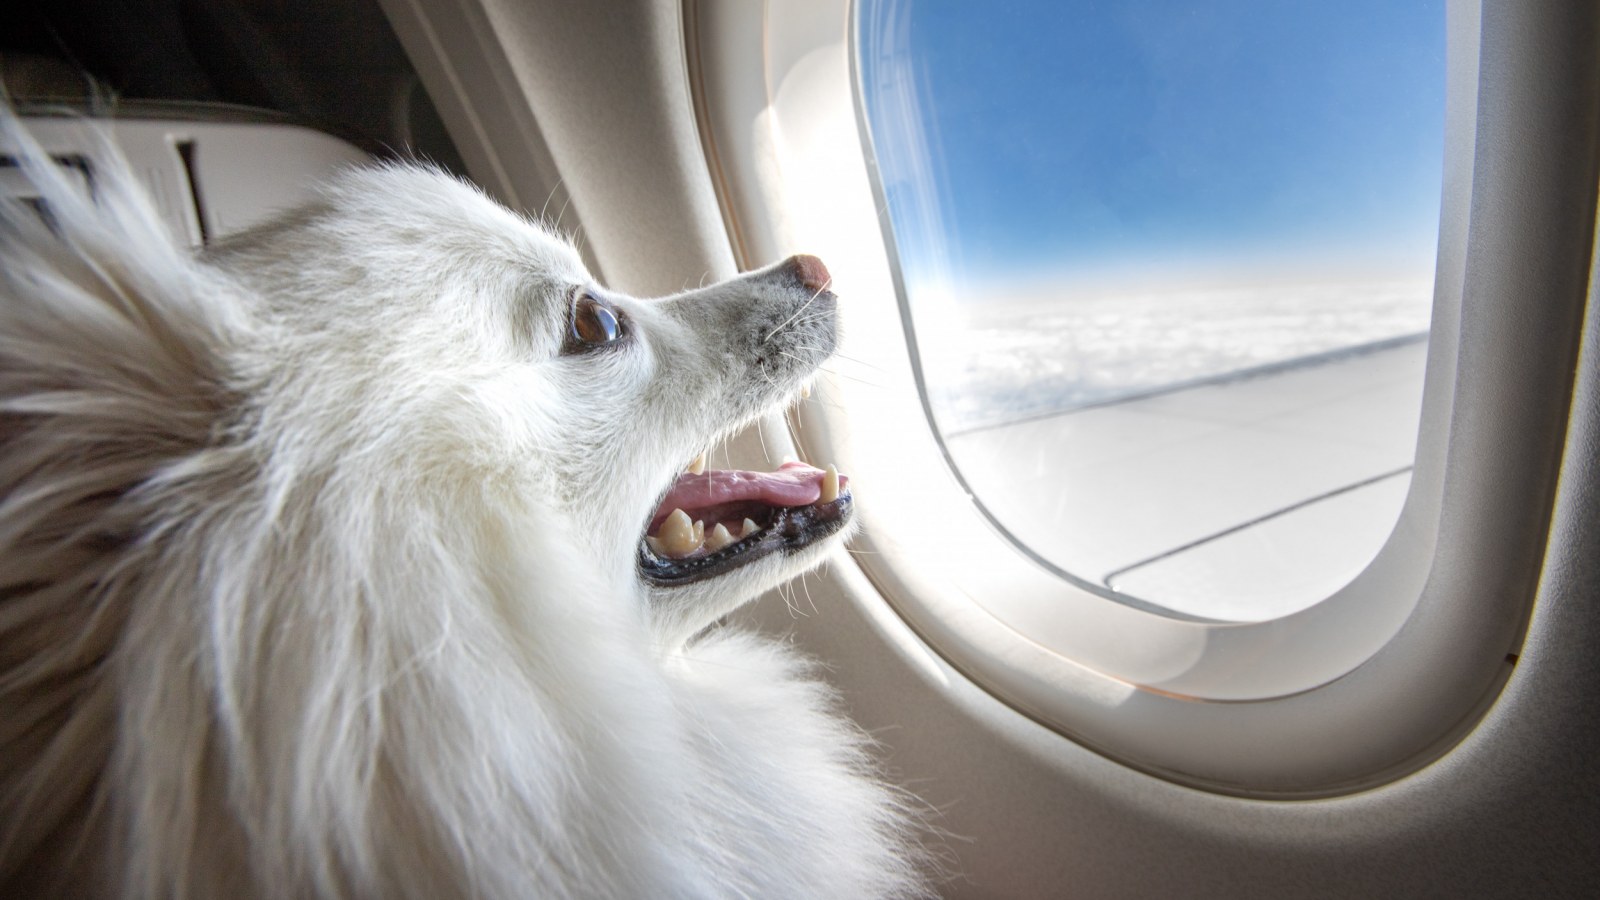 Il Pet Food in aereo rivoluziona i viaggi con gli animali, ora su Vueling